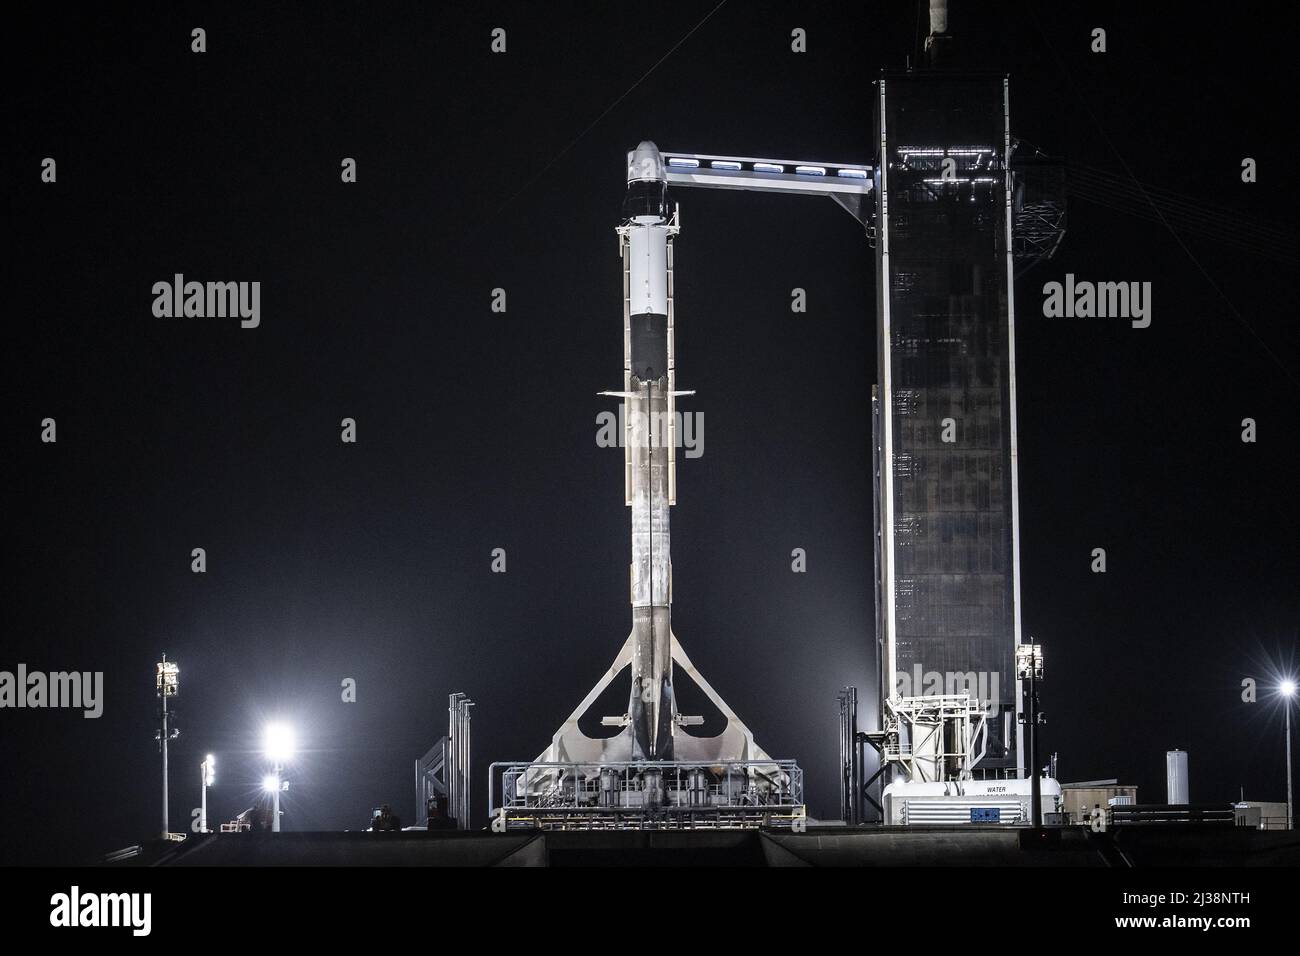 Les engins spatiaux Falcon 9 et Dragon de SpaceX sont verticaux dans le complexe historique Launch Complex 39A (LC-39A) du Kennedy Space Center de la NASA. SpaceX vise le vendredi 8 avril à lancer la mission Ax-1 d'Axiom Space à la Station spatiale internationale. L'équipage axe-1 de Michael López-Alegría, un astronaute à la retraite de la NASA; Larry Connor, un entrepreneur en immobilier et en technologie; Mark Pathy, un homme d'affaires canadien; et Eytan Stibbe, un entrepreneur israélien et ancien pilote de chasse à réaction, passeront dix jours dans le laboratoire en orbite. La mission Ax-1 d'Axiom Space est la première mission de vol spatial humain entièrement privée Banque D'Images